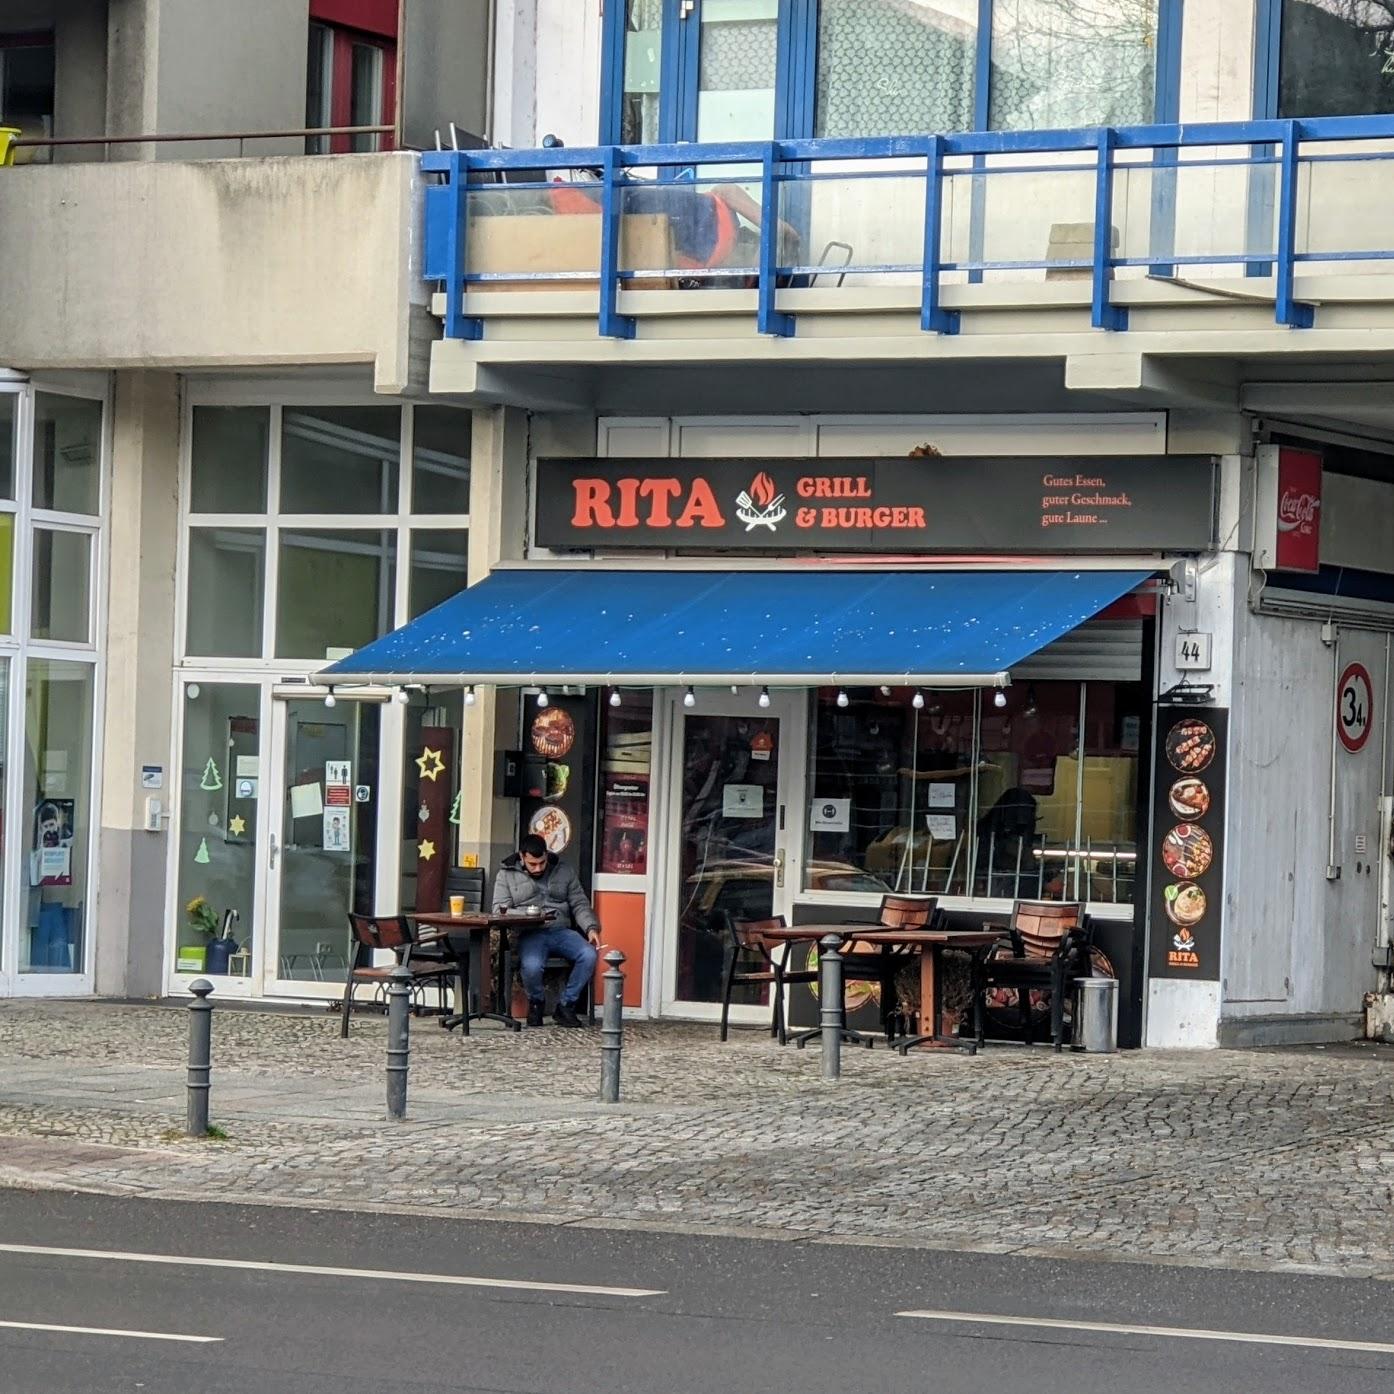 Restaurant "Rita Grill Berlin" in Berlin